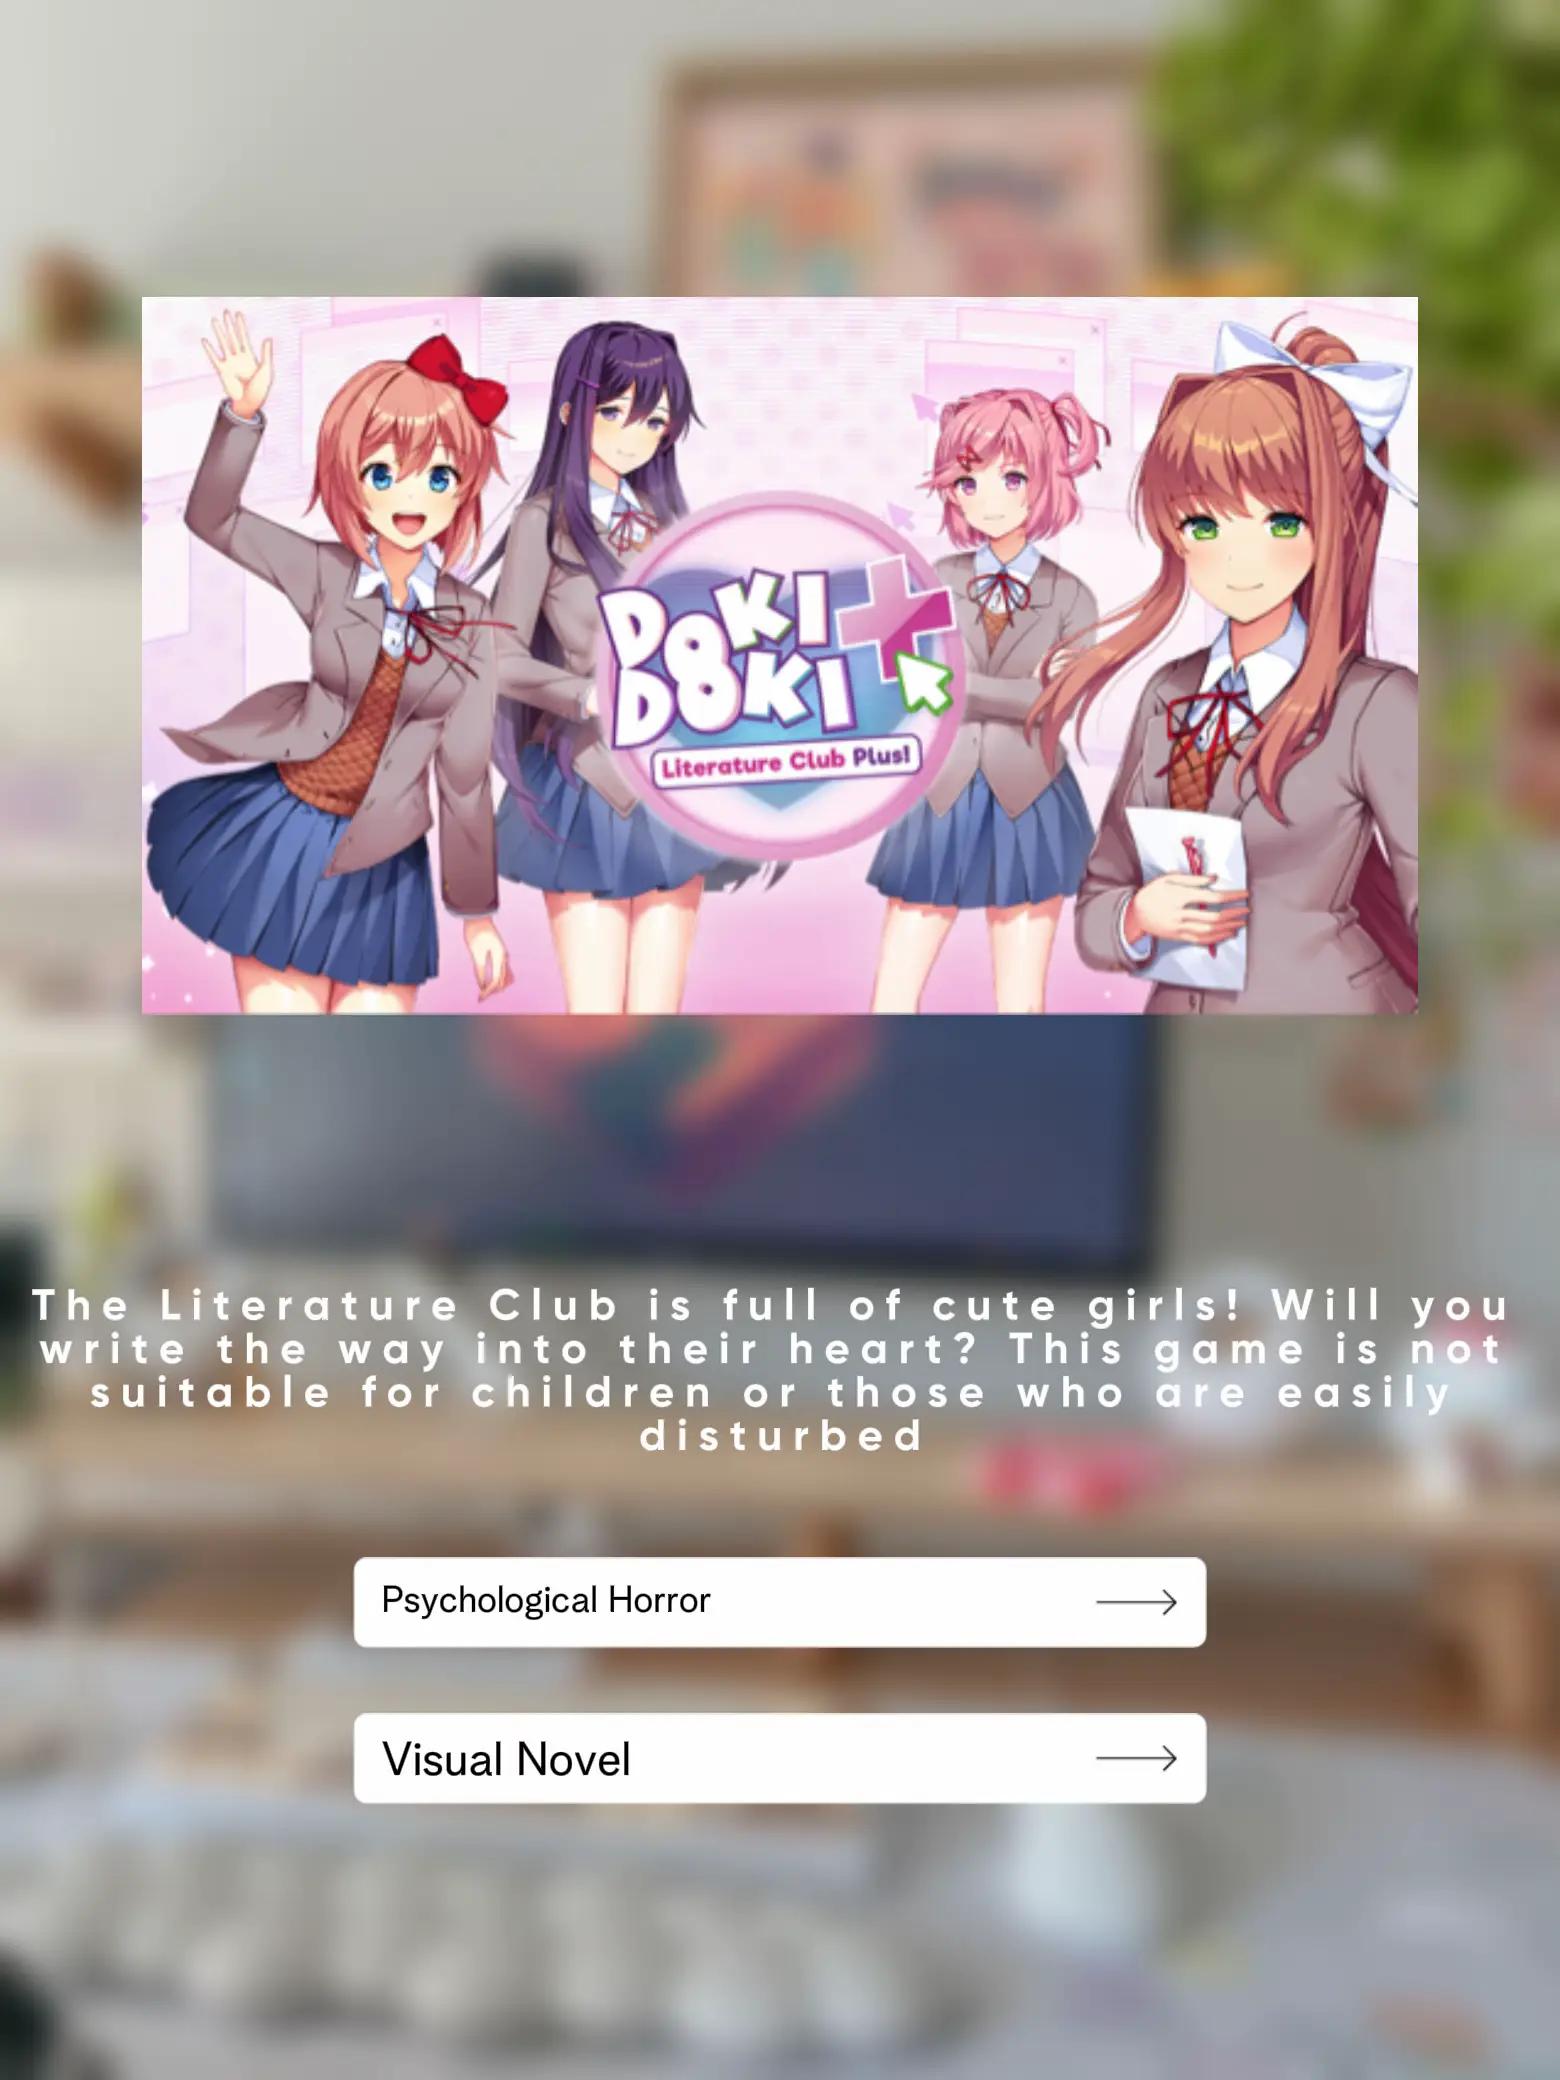 Doki Doki Literature Club Plus! on Steam